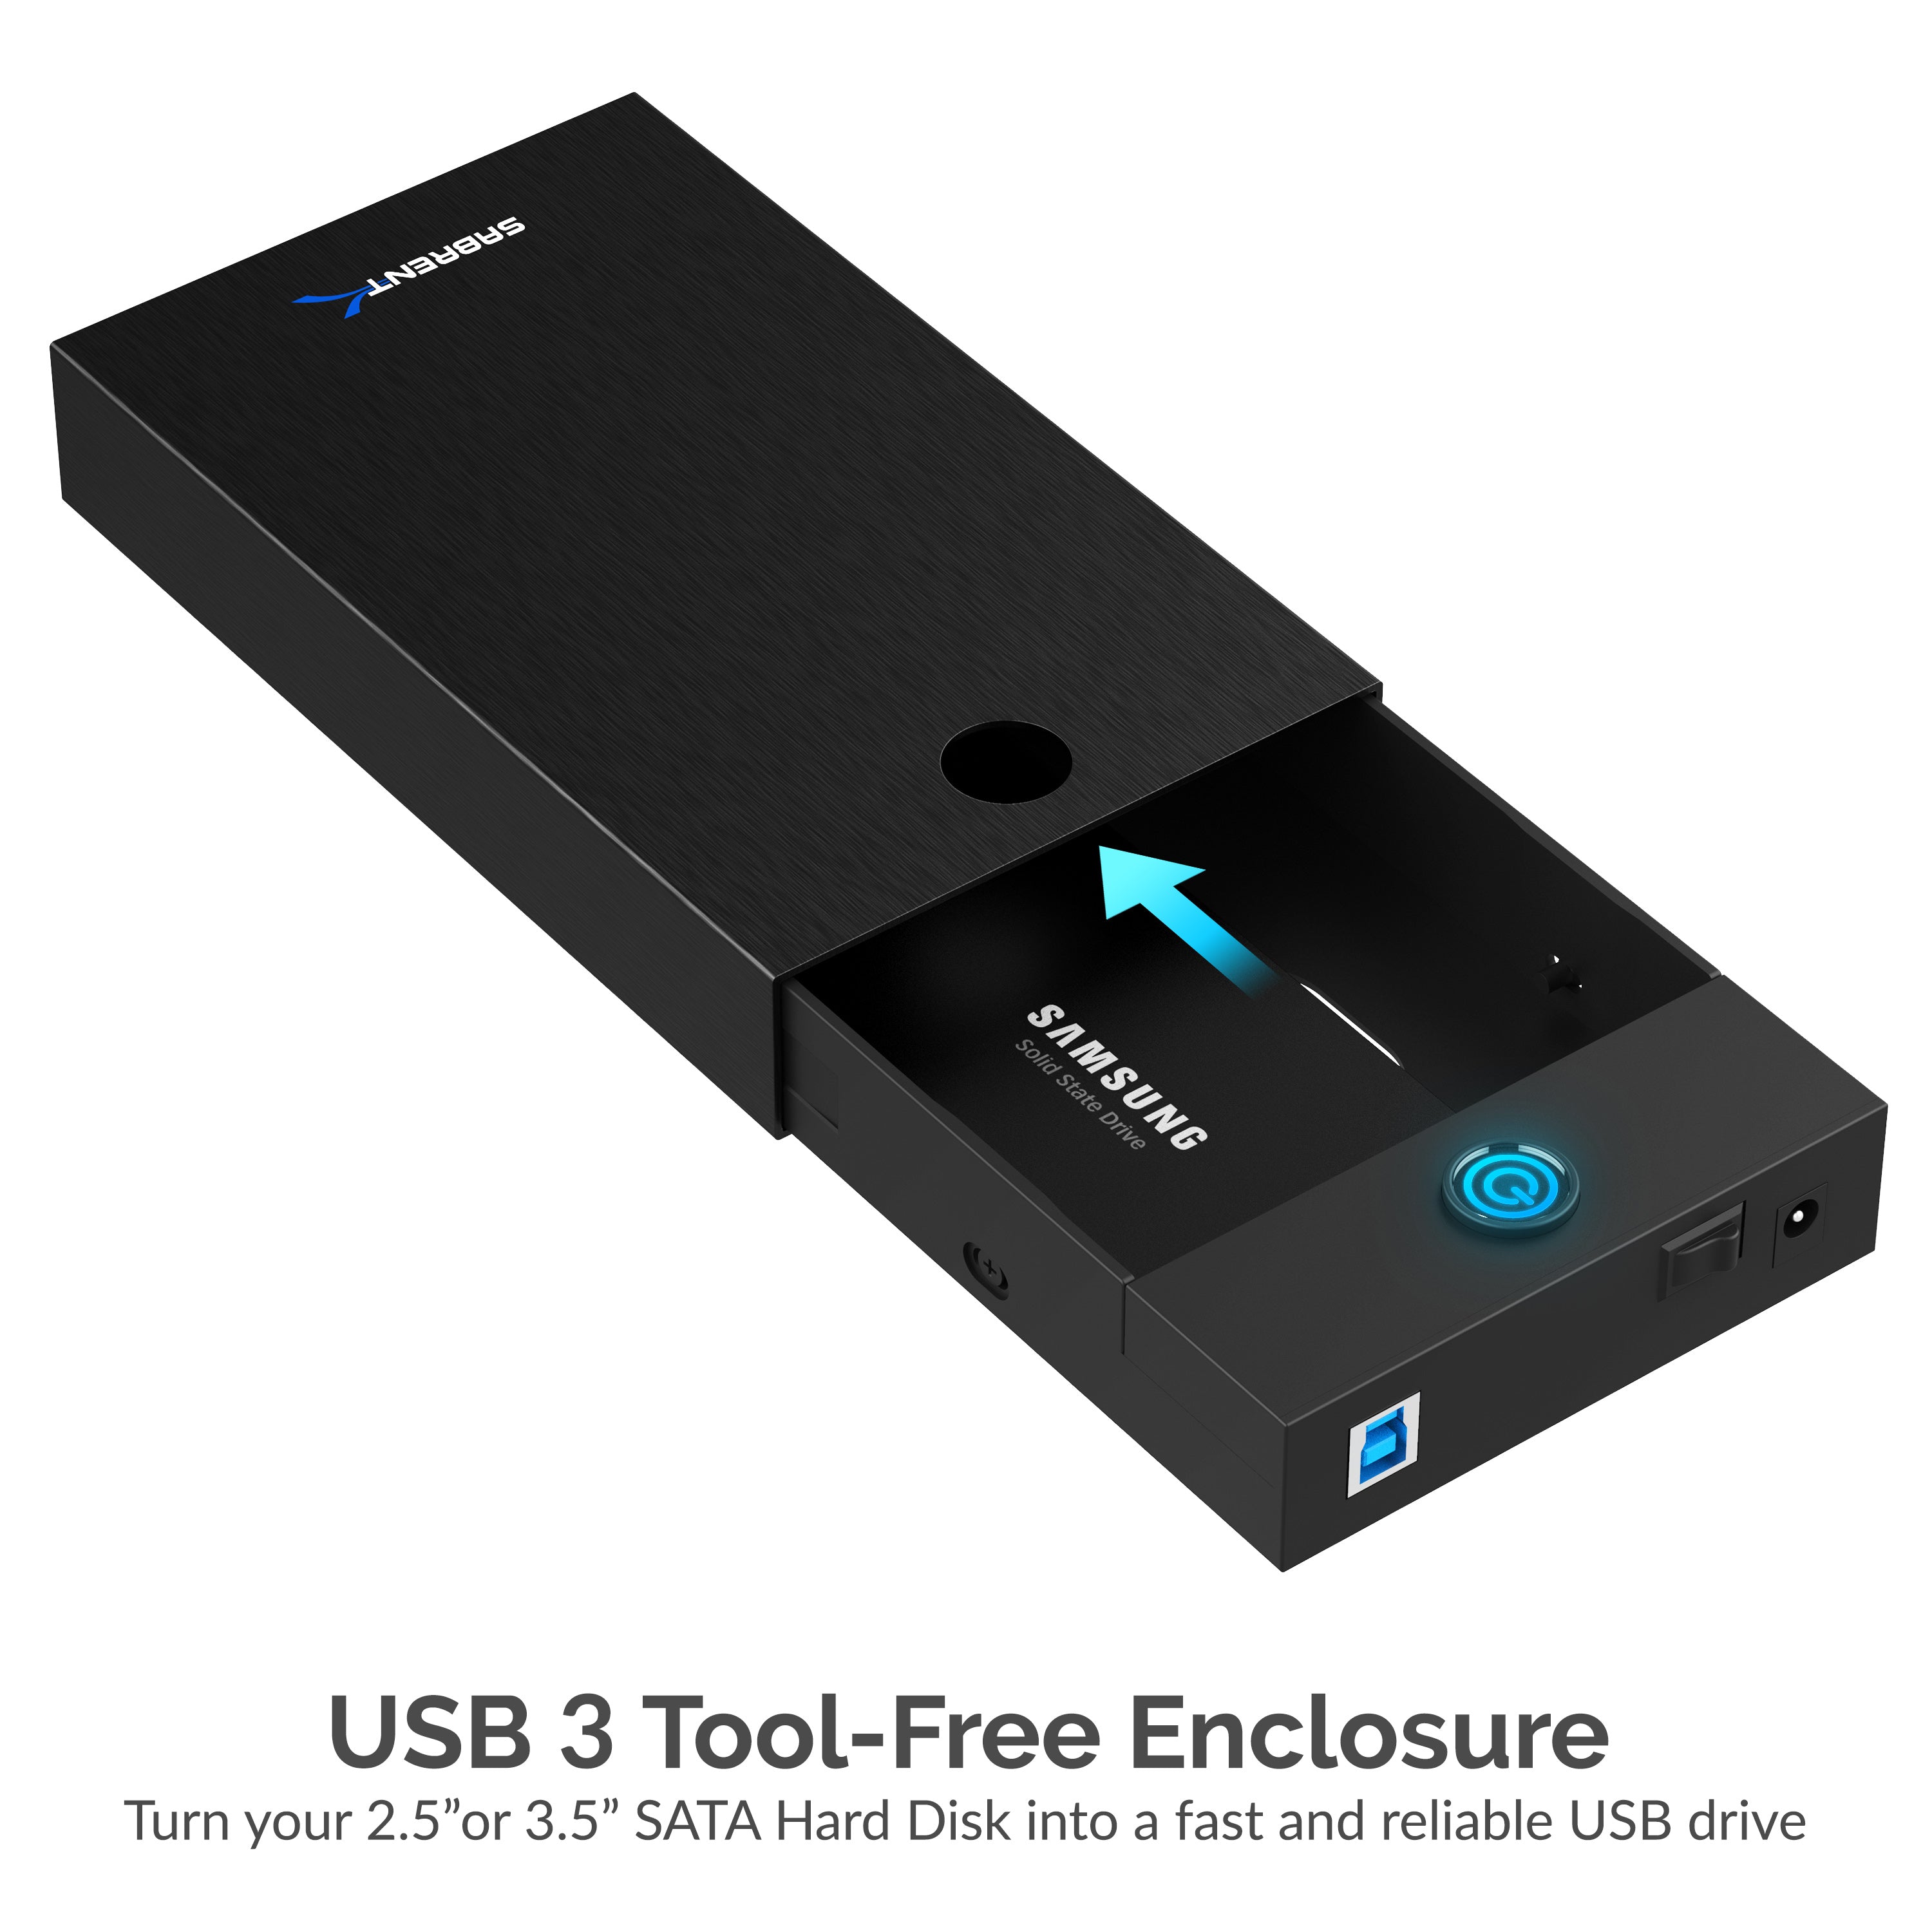 USB 3.0 Tool-Free Enclosure for 2.5” and 3.5” Internal SATA Hard